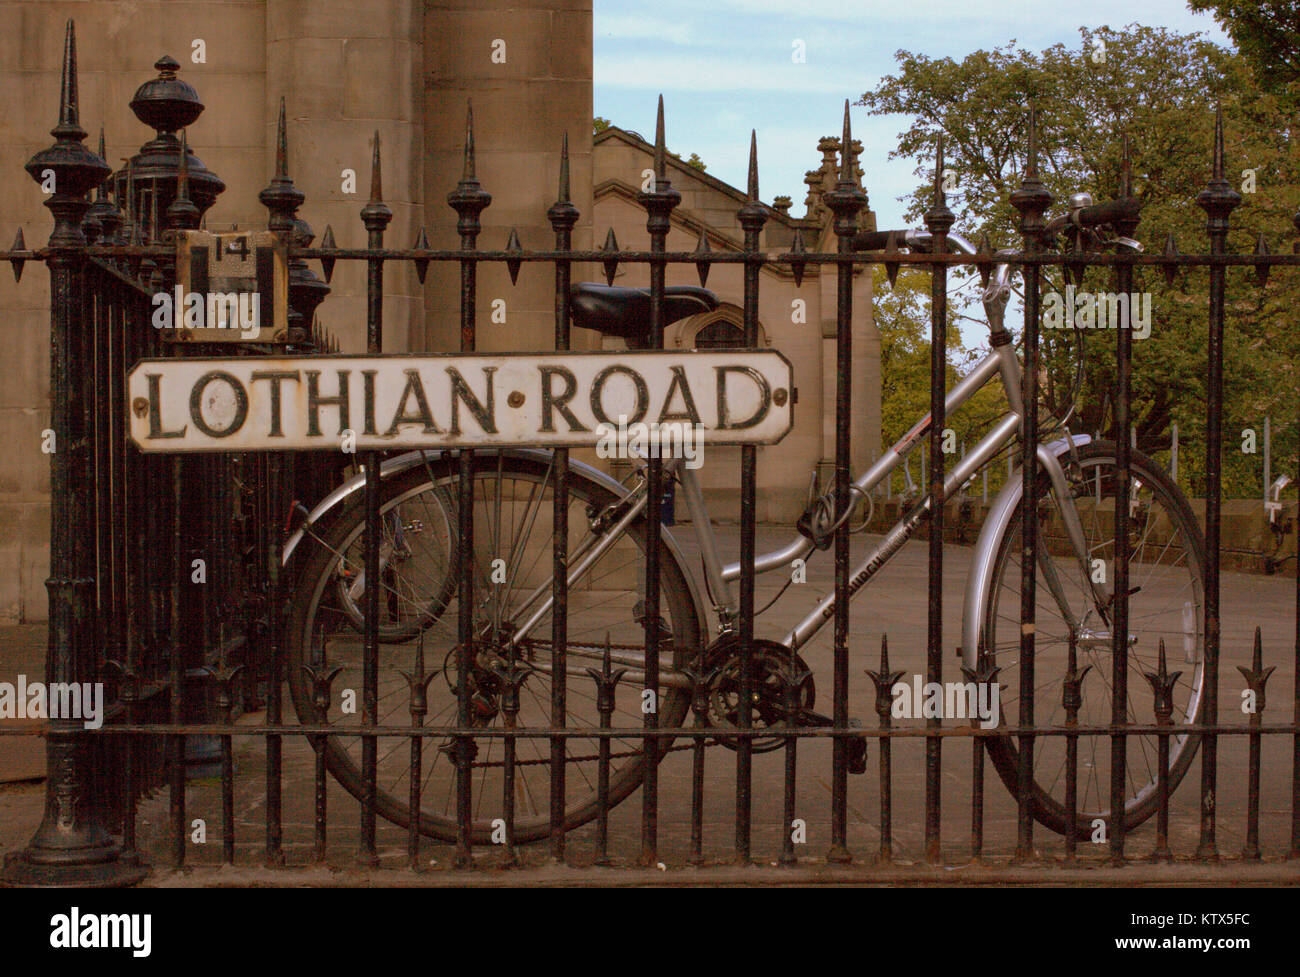 Noleggio bici fissato a ringhiera con un cartello stradale per Lothian Road, Edimburgo, Regno Unito Foto Stock